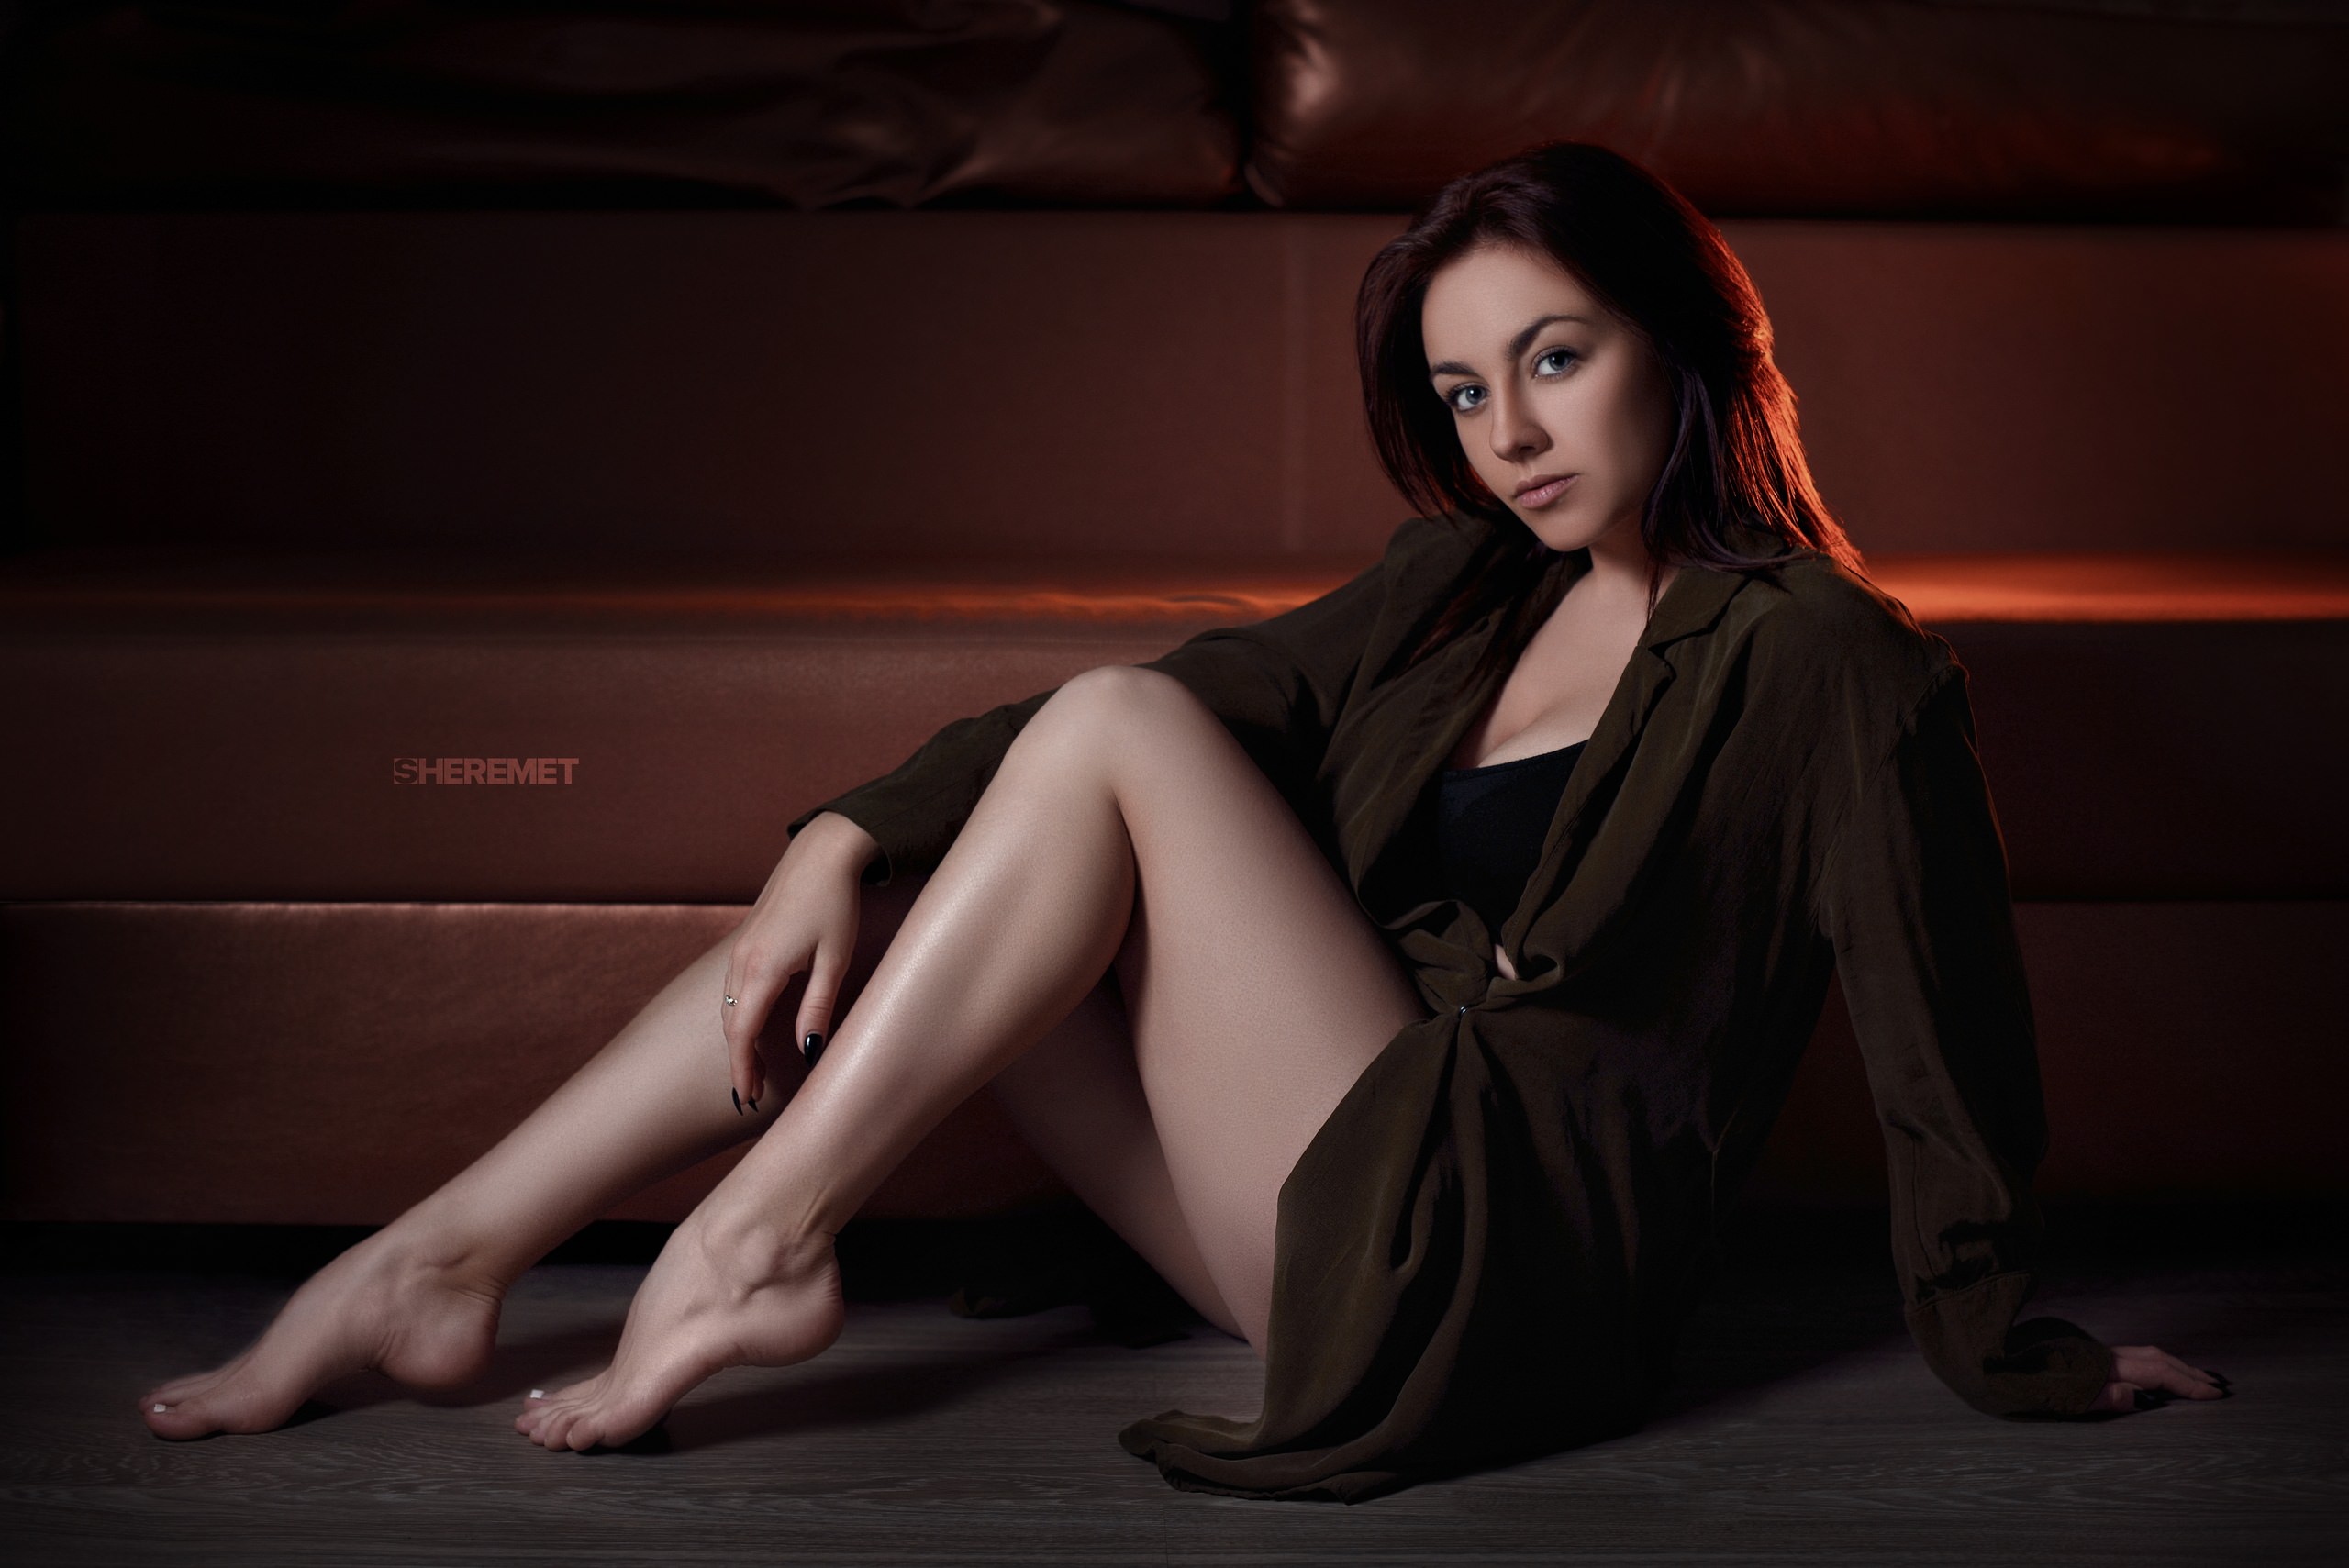 Women Sitting Couch Black Nails Legs On The Floor Ivan Sheremet Model Brunette Women Indoors Barefoo 2560x1709